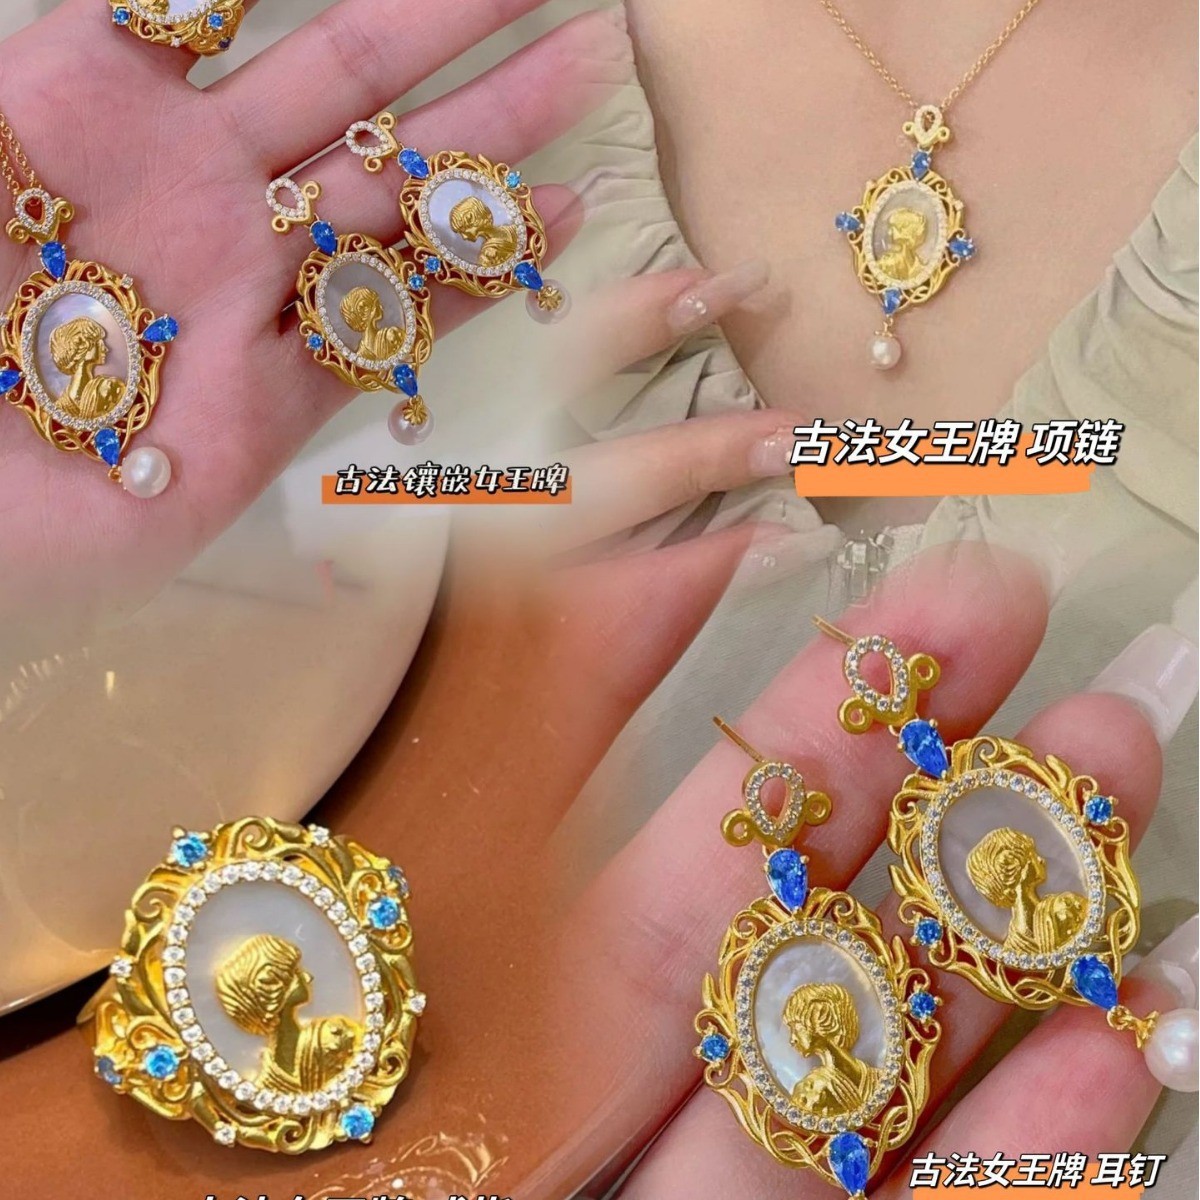 法式复古洛可可风格女王人像牌饰品中古宫廷母贝珍珠项链耳环戒指